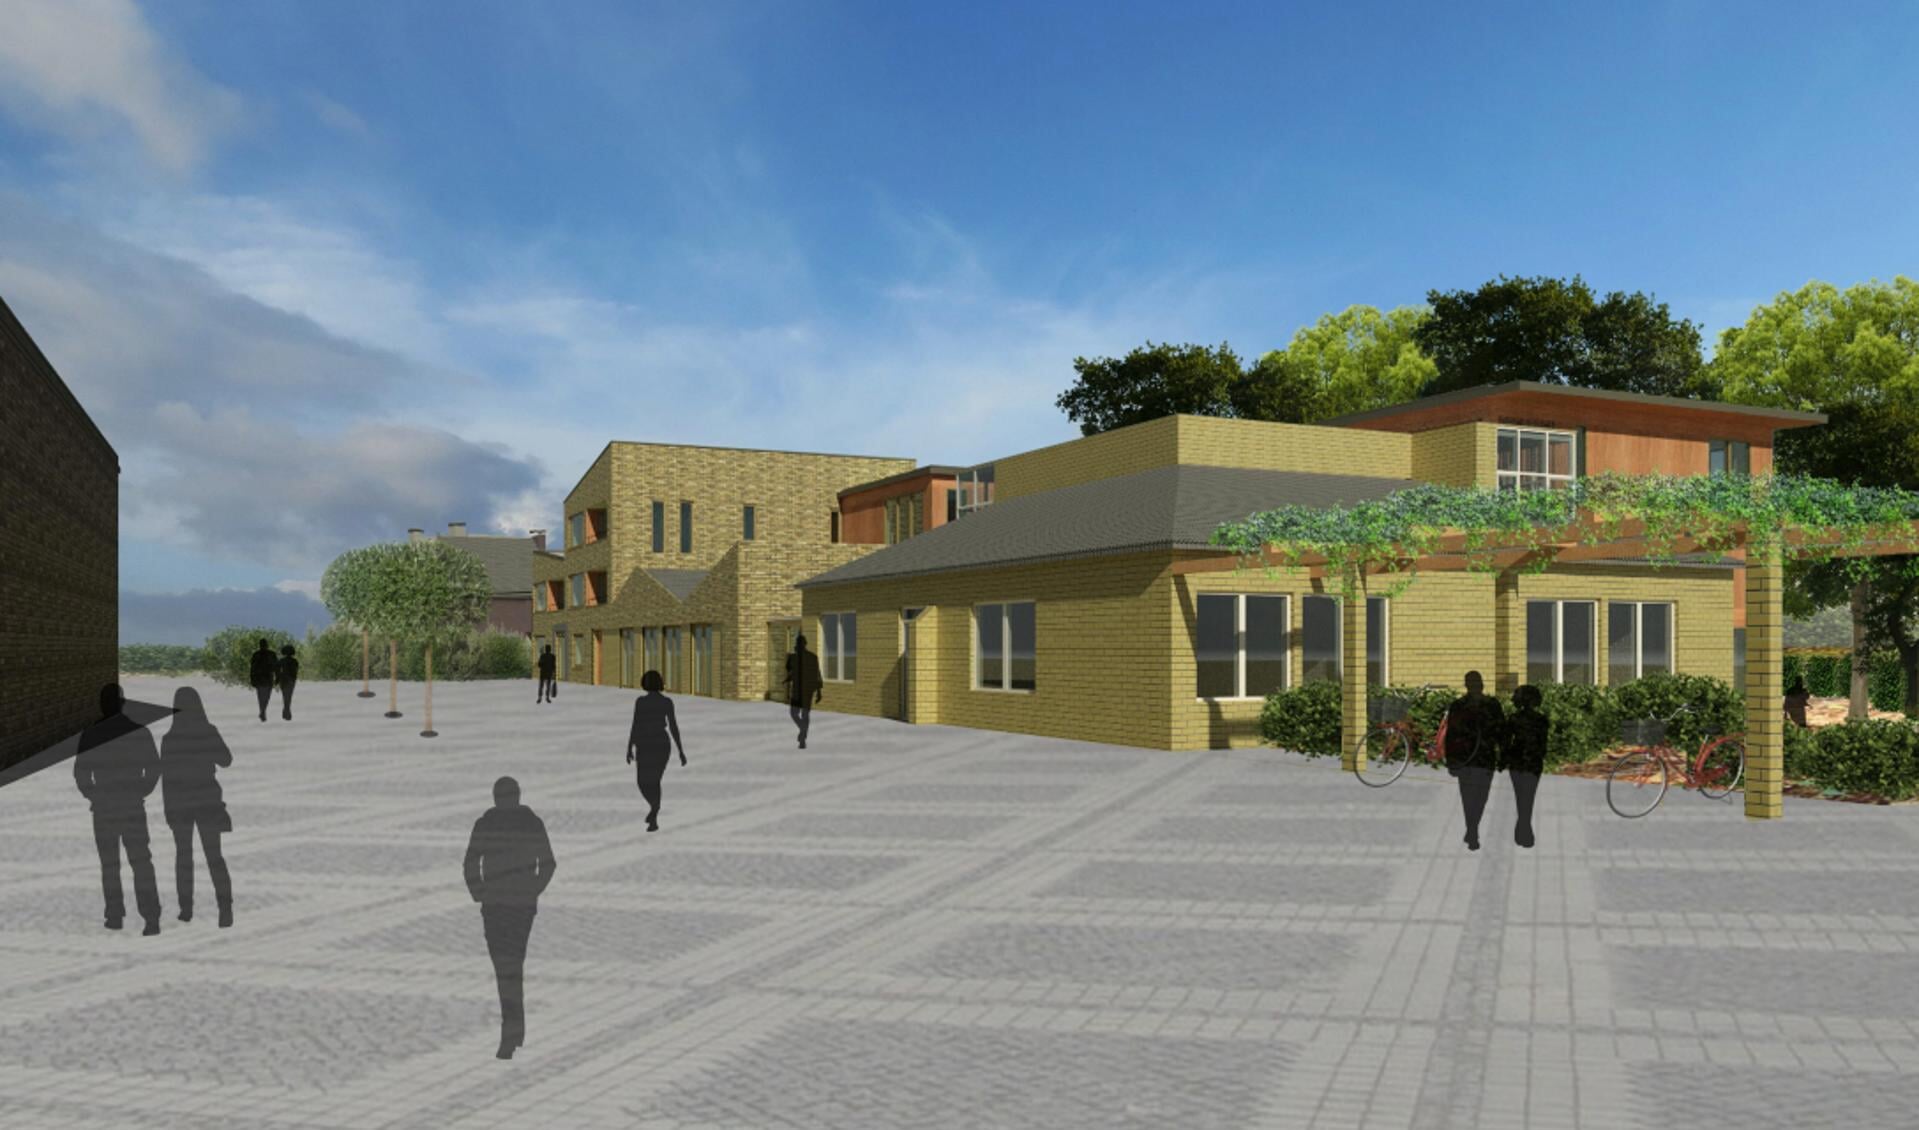 Volgens de gemeente zorgt het bouwplan voor een overzichtelijk dorpsplein met 'inspirerende bouwvolumes'.